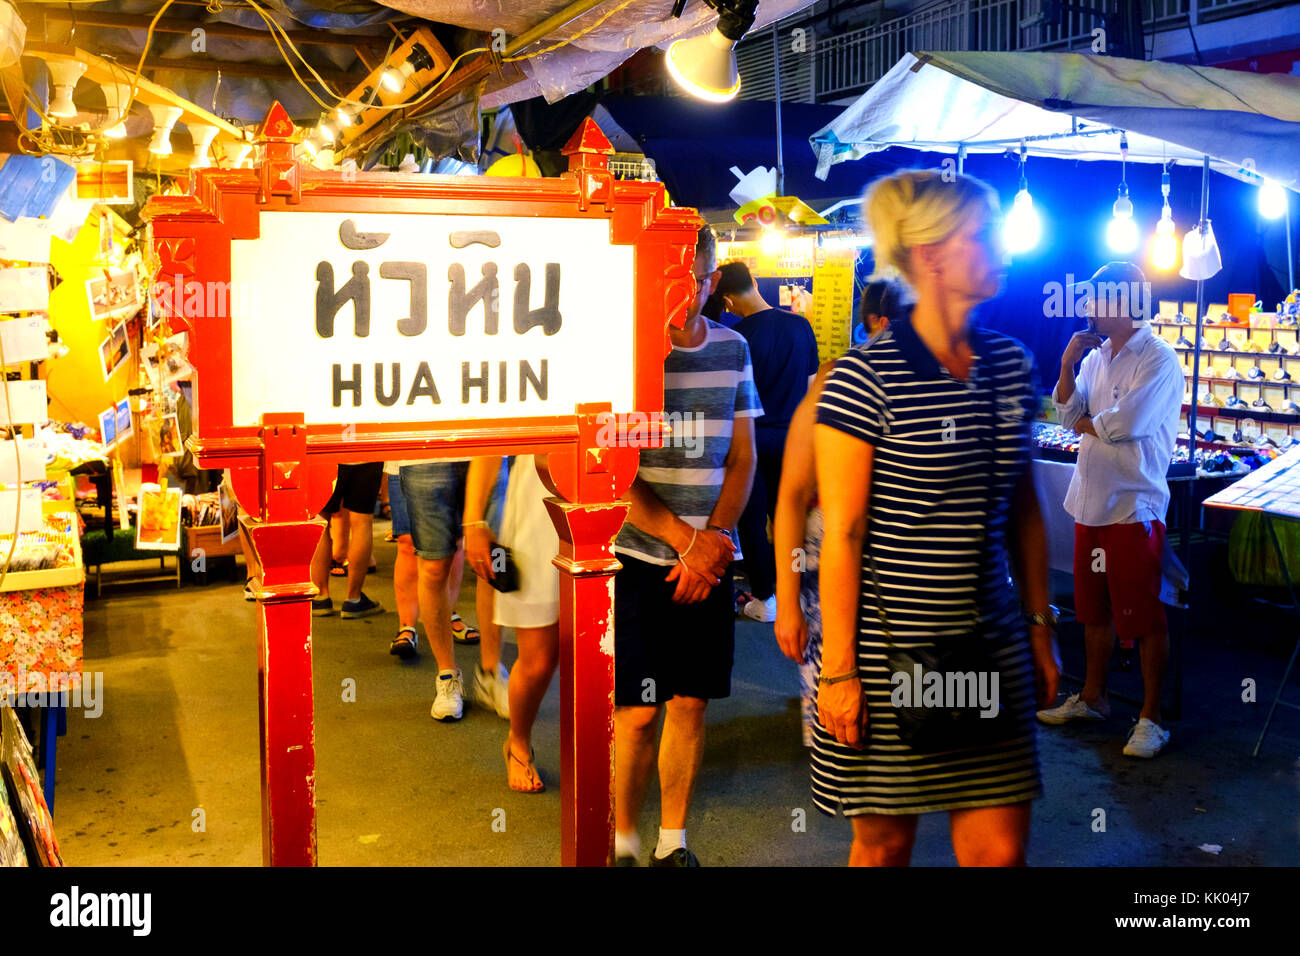 Hua Hin night market, Hua Hin, Thailand Stock Photo